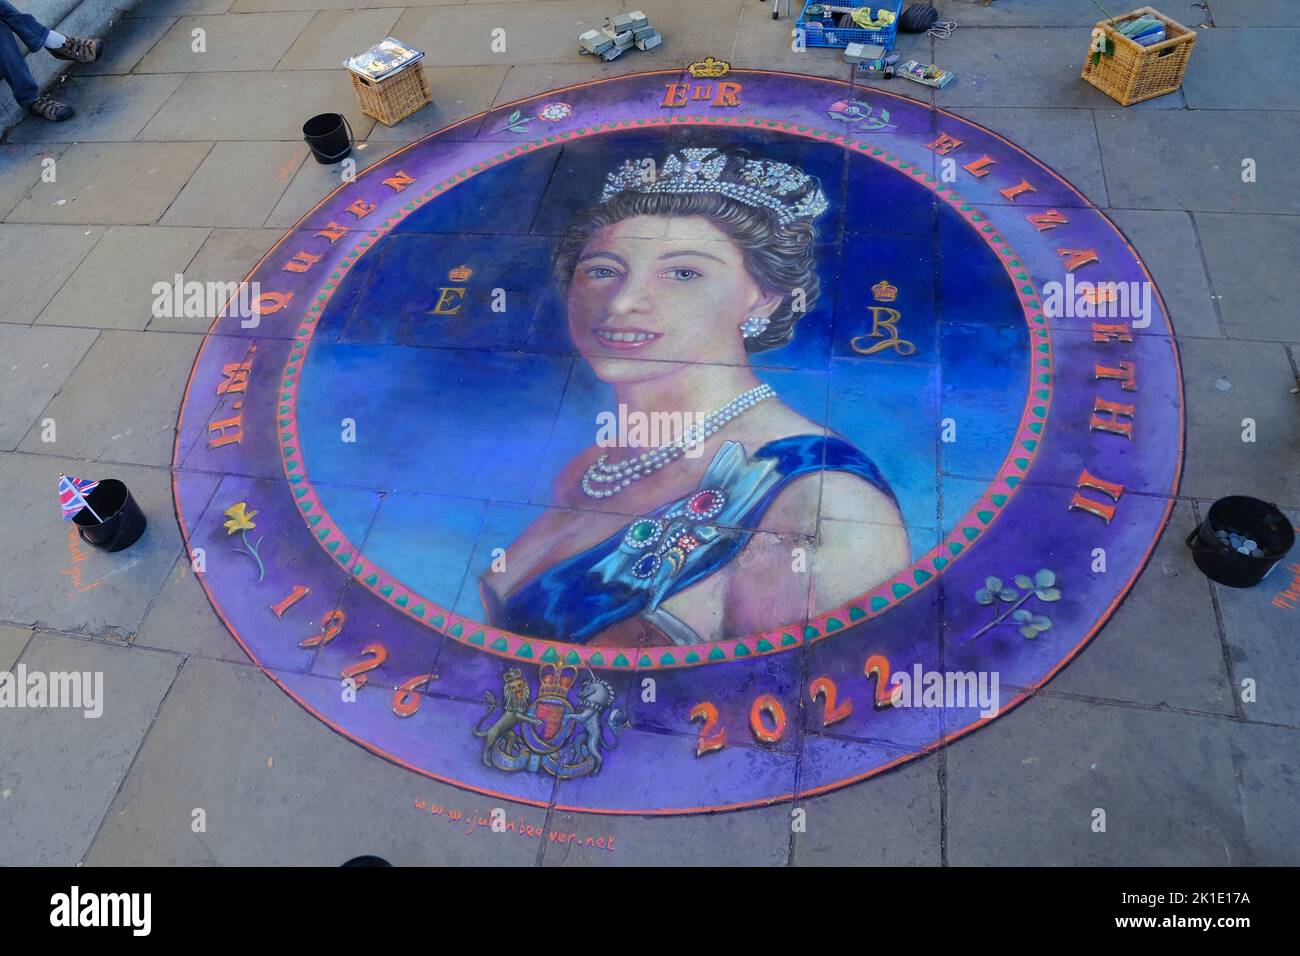 Londres, Royaume-Uni. 17th septembre 2022. Les artistes du pavé créent des œuvres d'art pastel en hommage à sa Majesté la Reine dans le West End. Crédit : onzième heure Photographie/Alamy Live News Banque D'Images